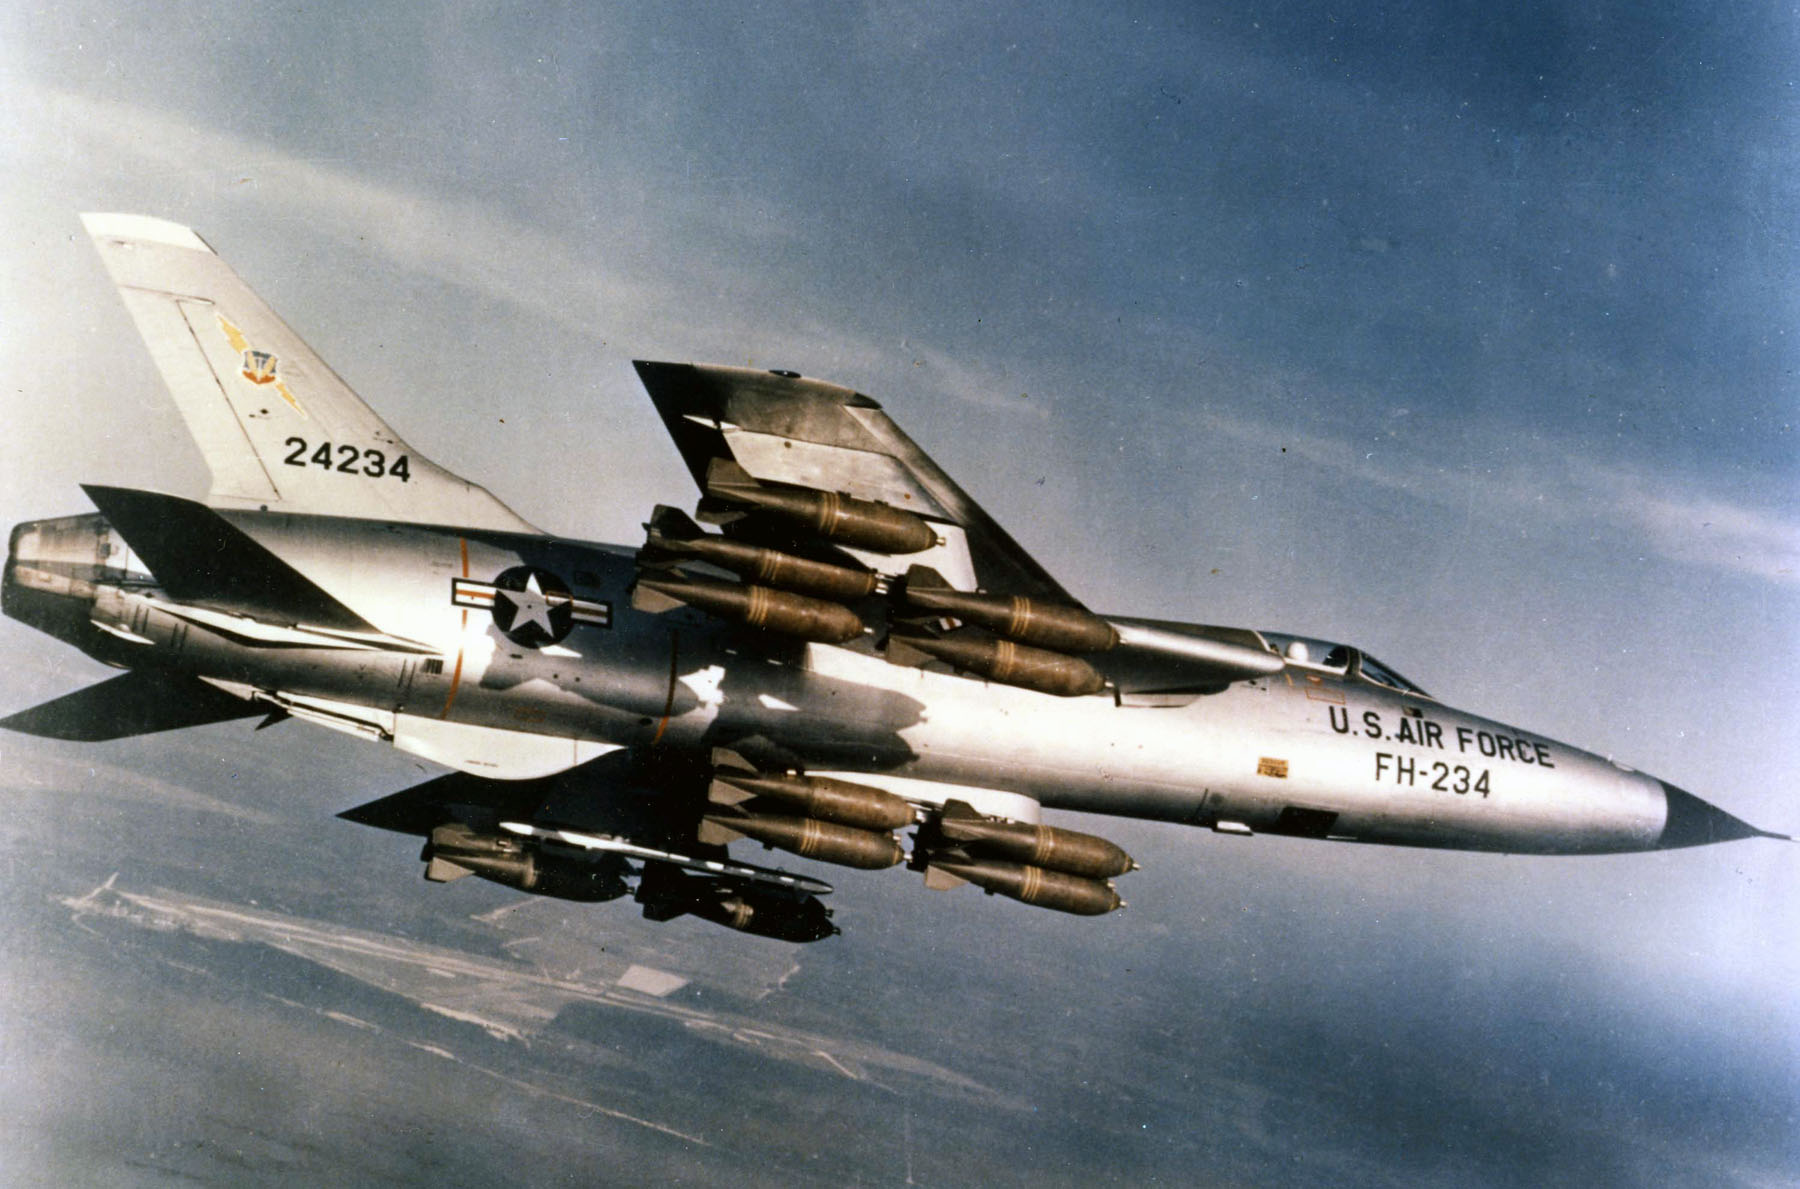 Republic F-105D-30-RE